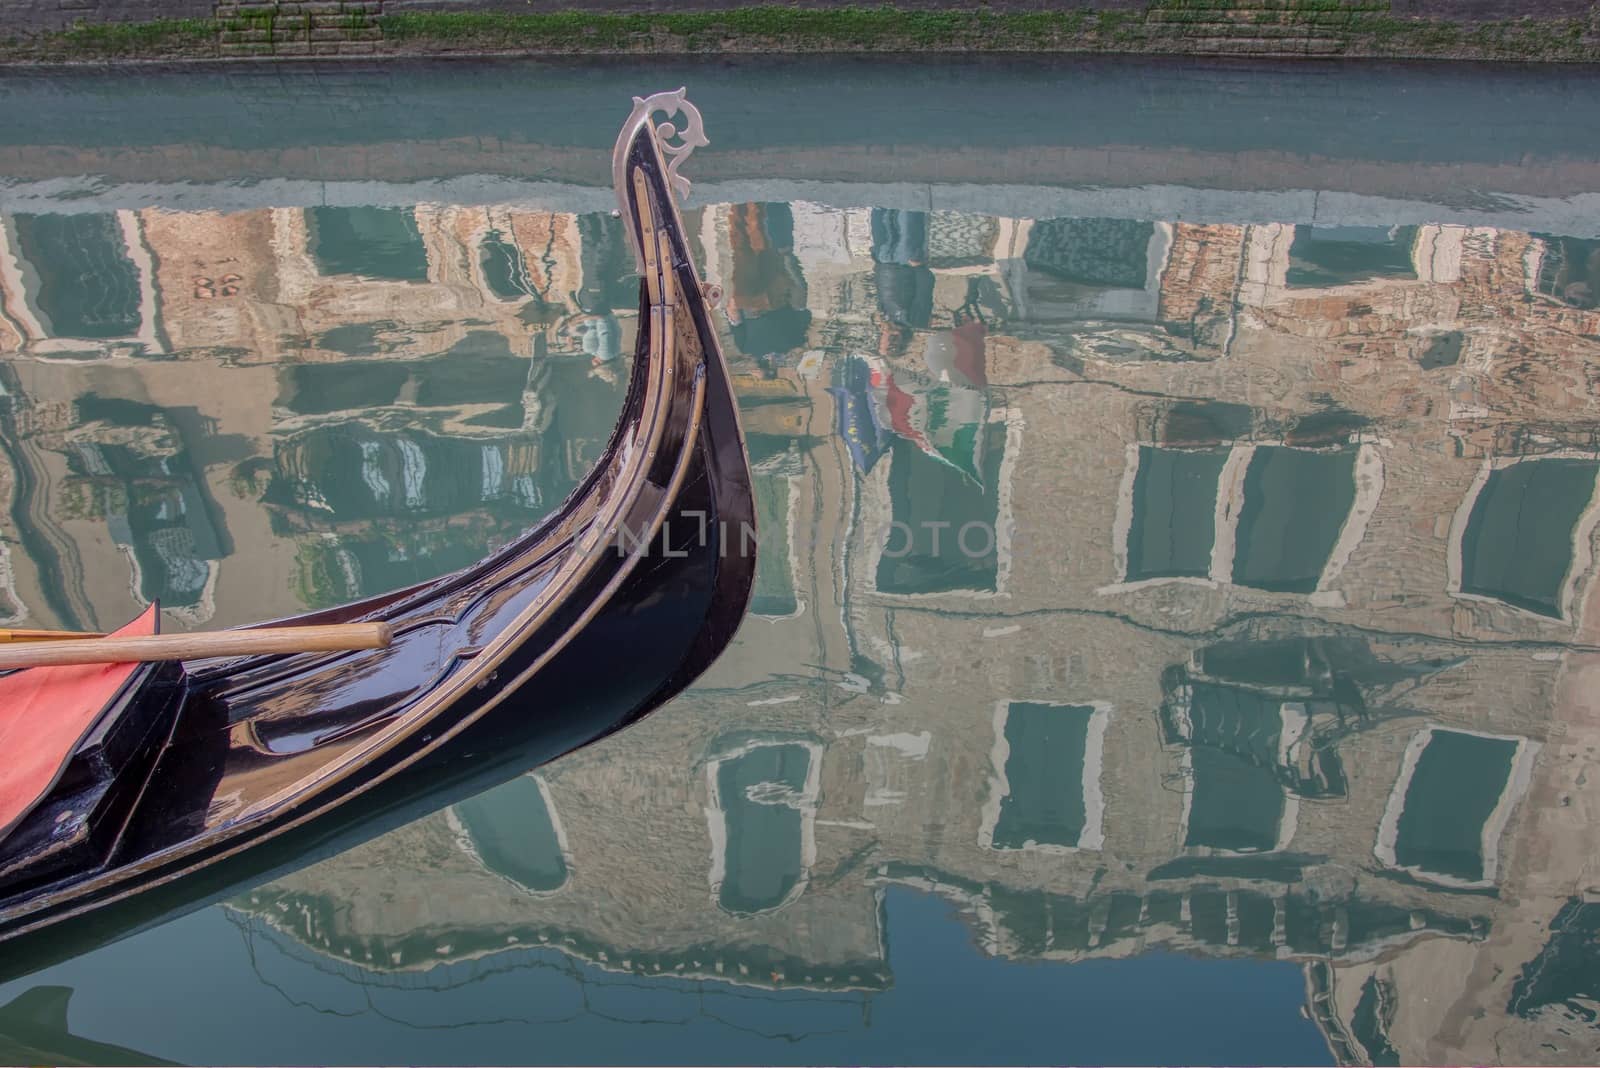 Venice gondola and reflection in Italy. by CreativePhotoSpain